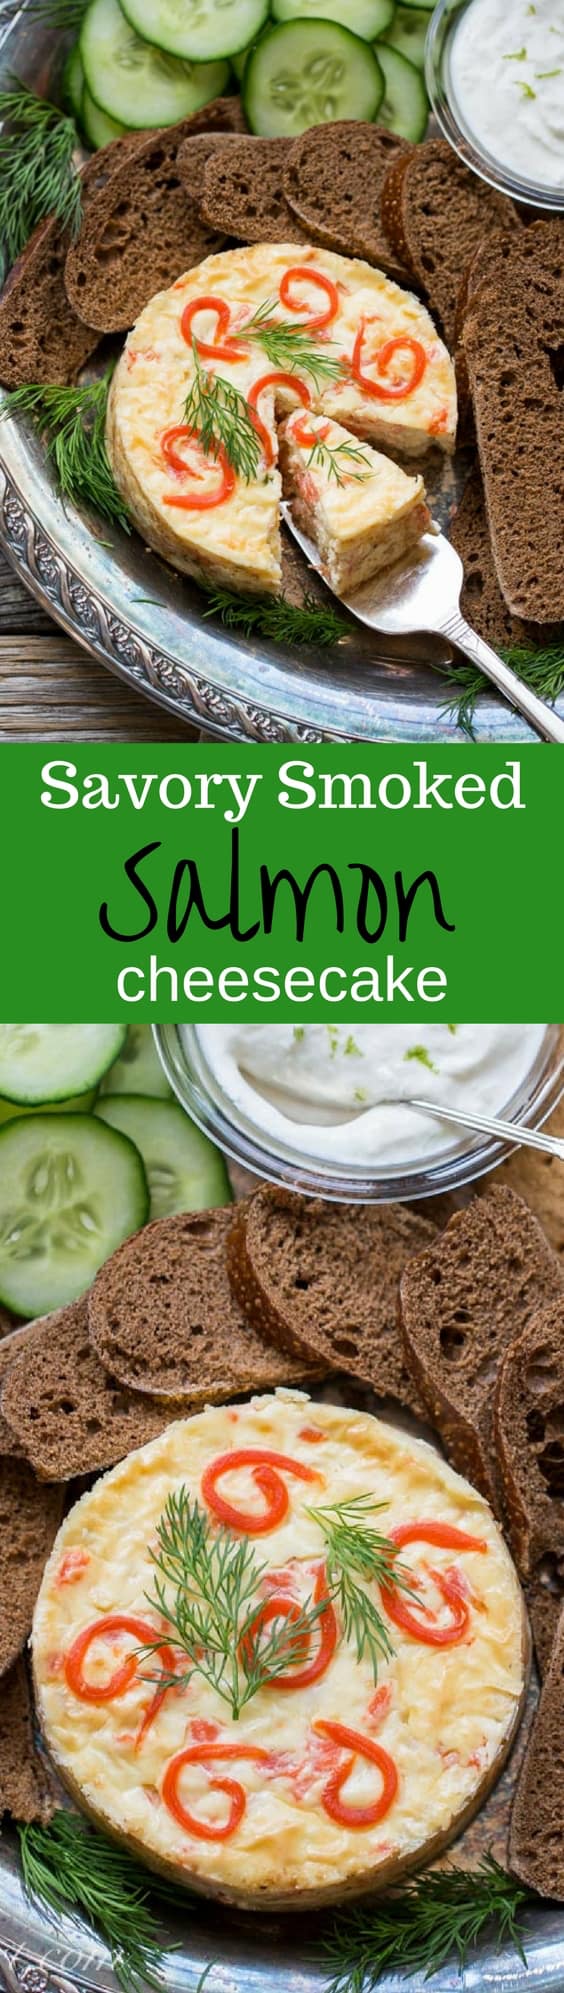 Savory Smoked Salmon Cheesecake with Horseradish-Lime Cream | www.savingdessert.com